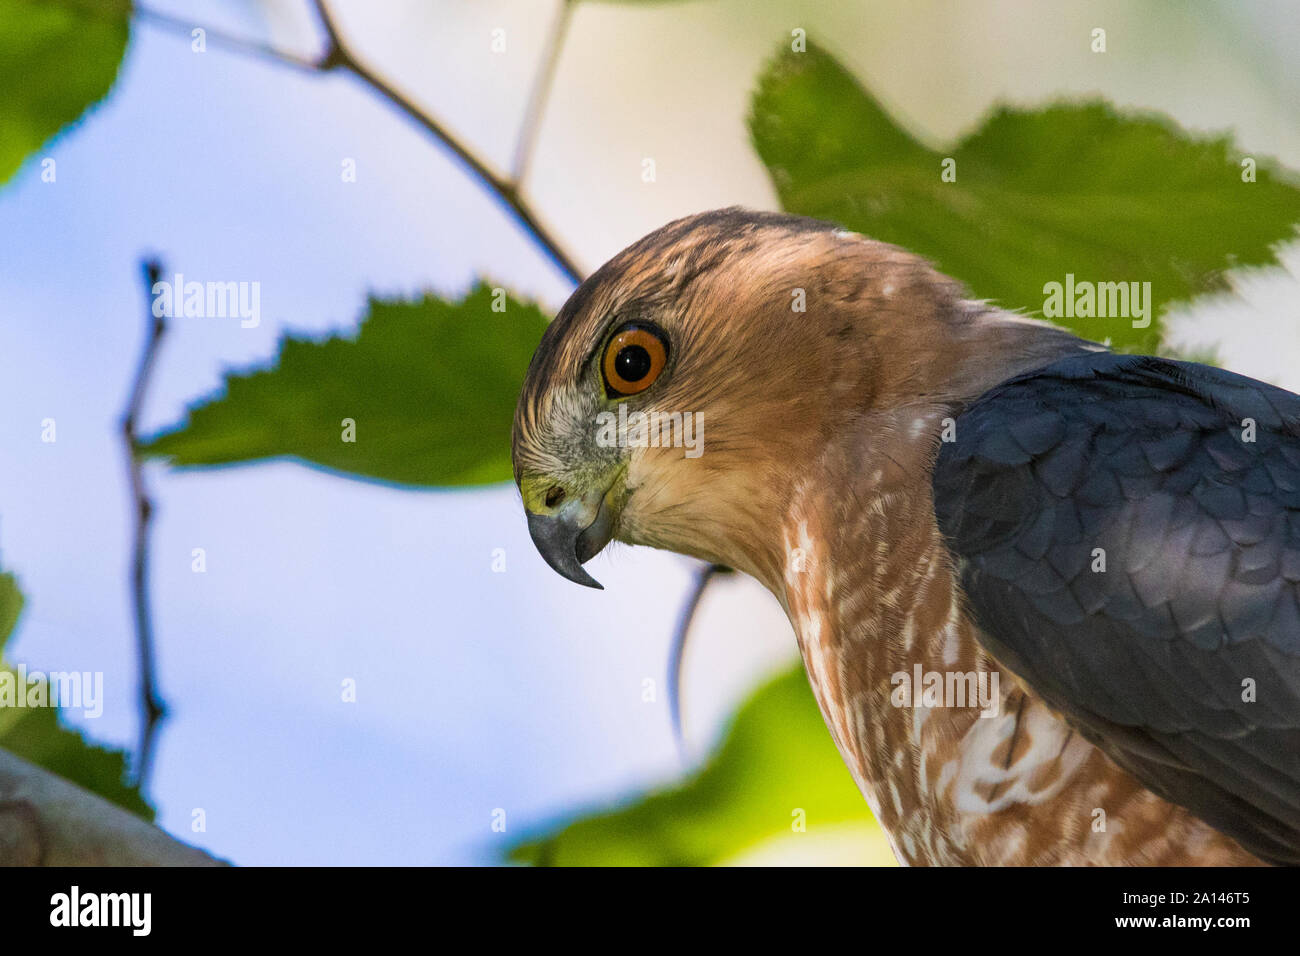 Cooper's hawk (Accipiter cooperii) portrait Stock Photo